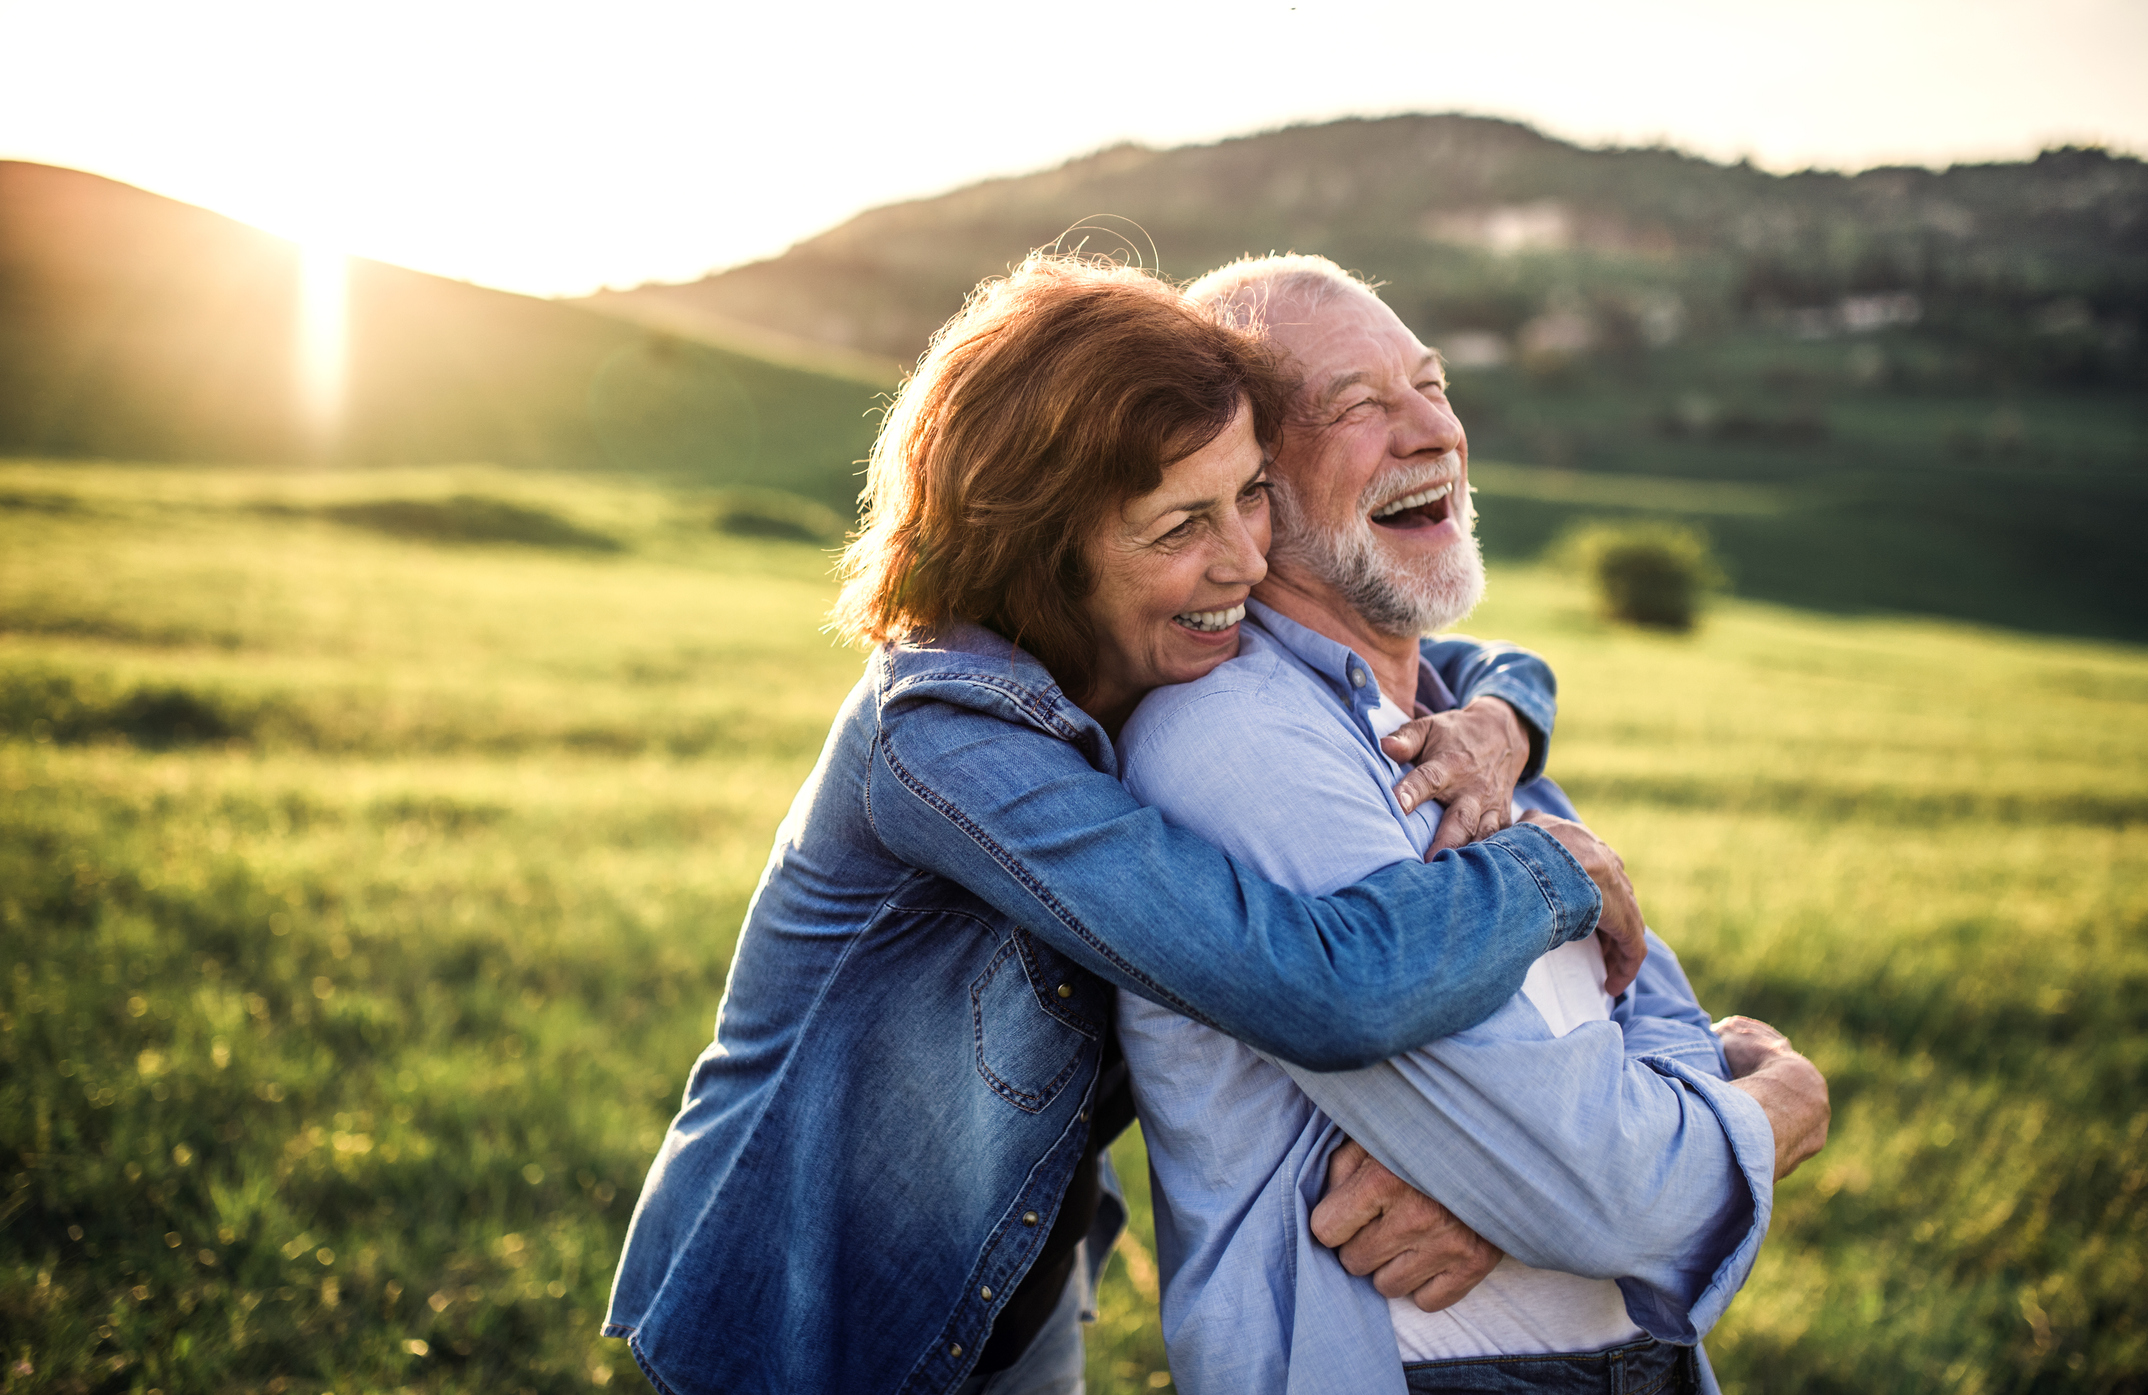 Ein älteres Paar lachend sich umarmend in sonniger, grüner, hügeliger Landschaft.